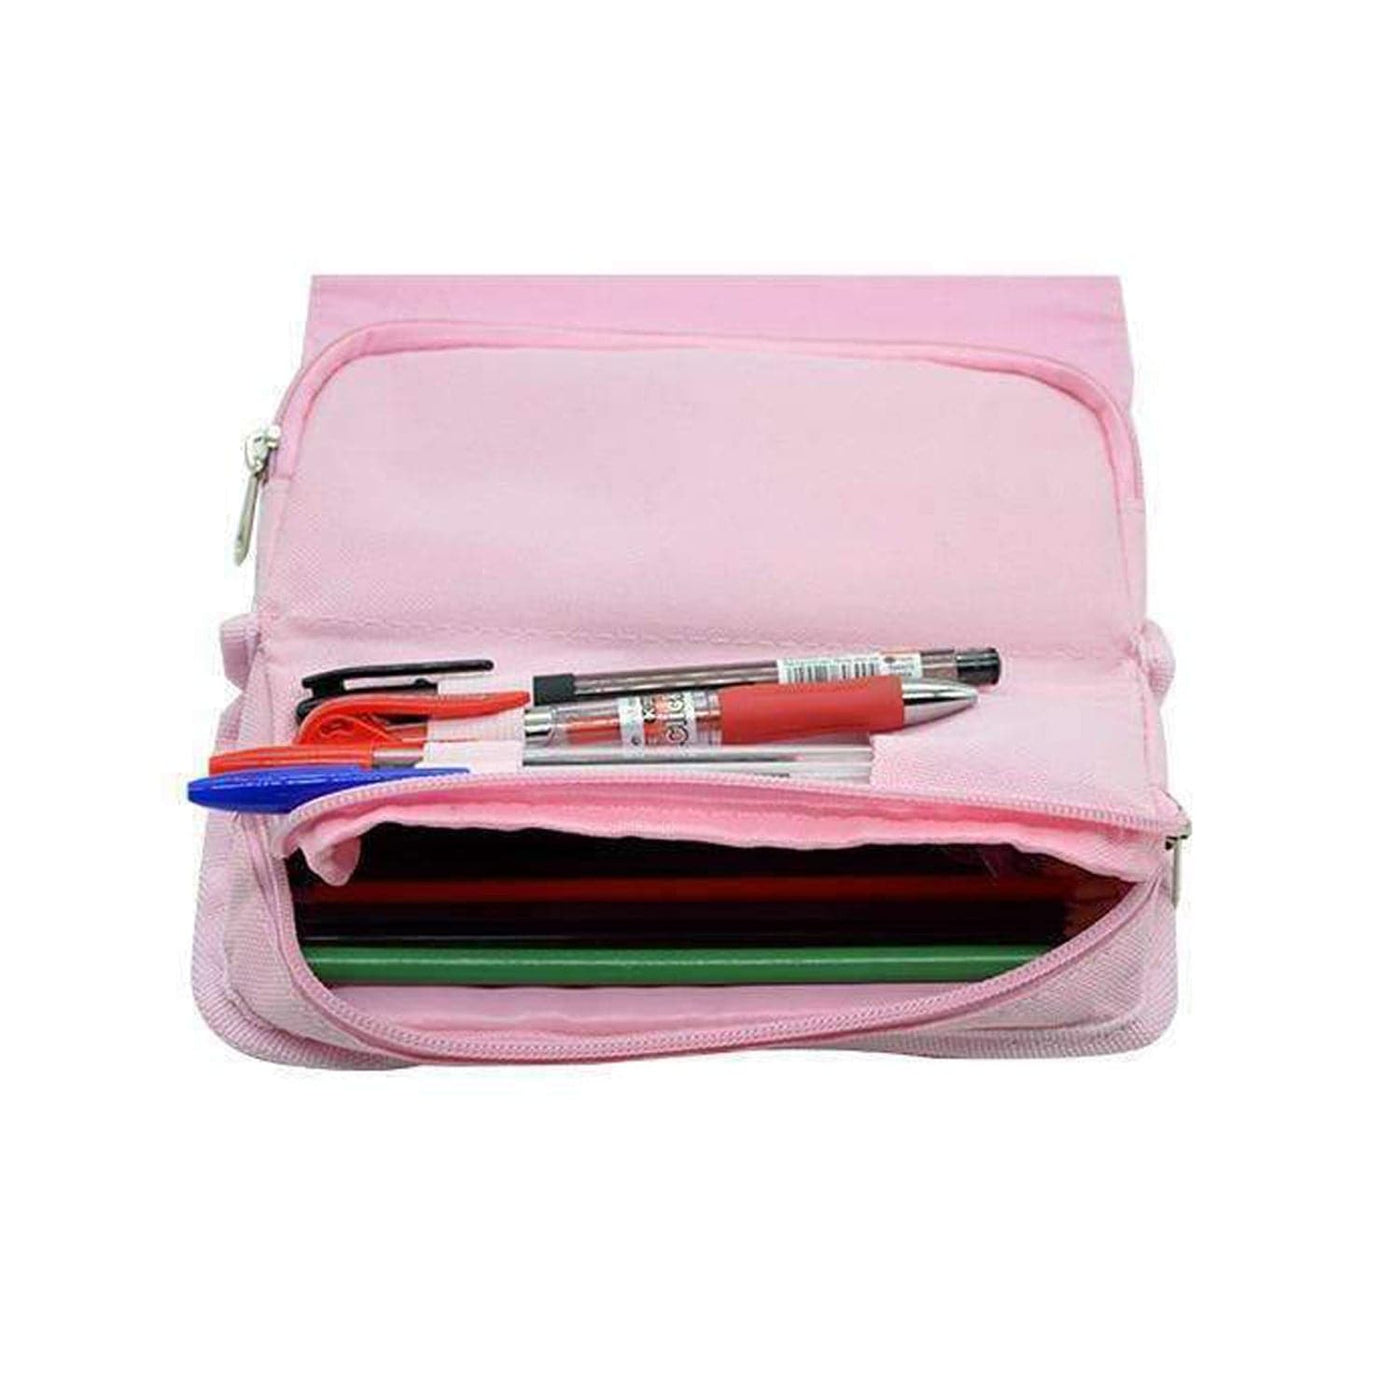 Pink Dress - Margot Robbie Pencil Case